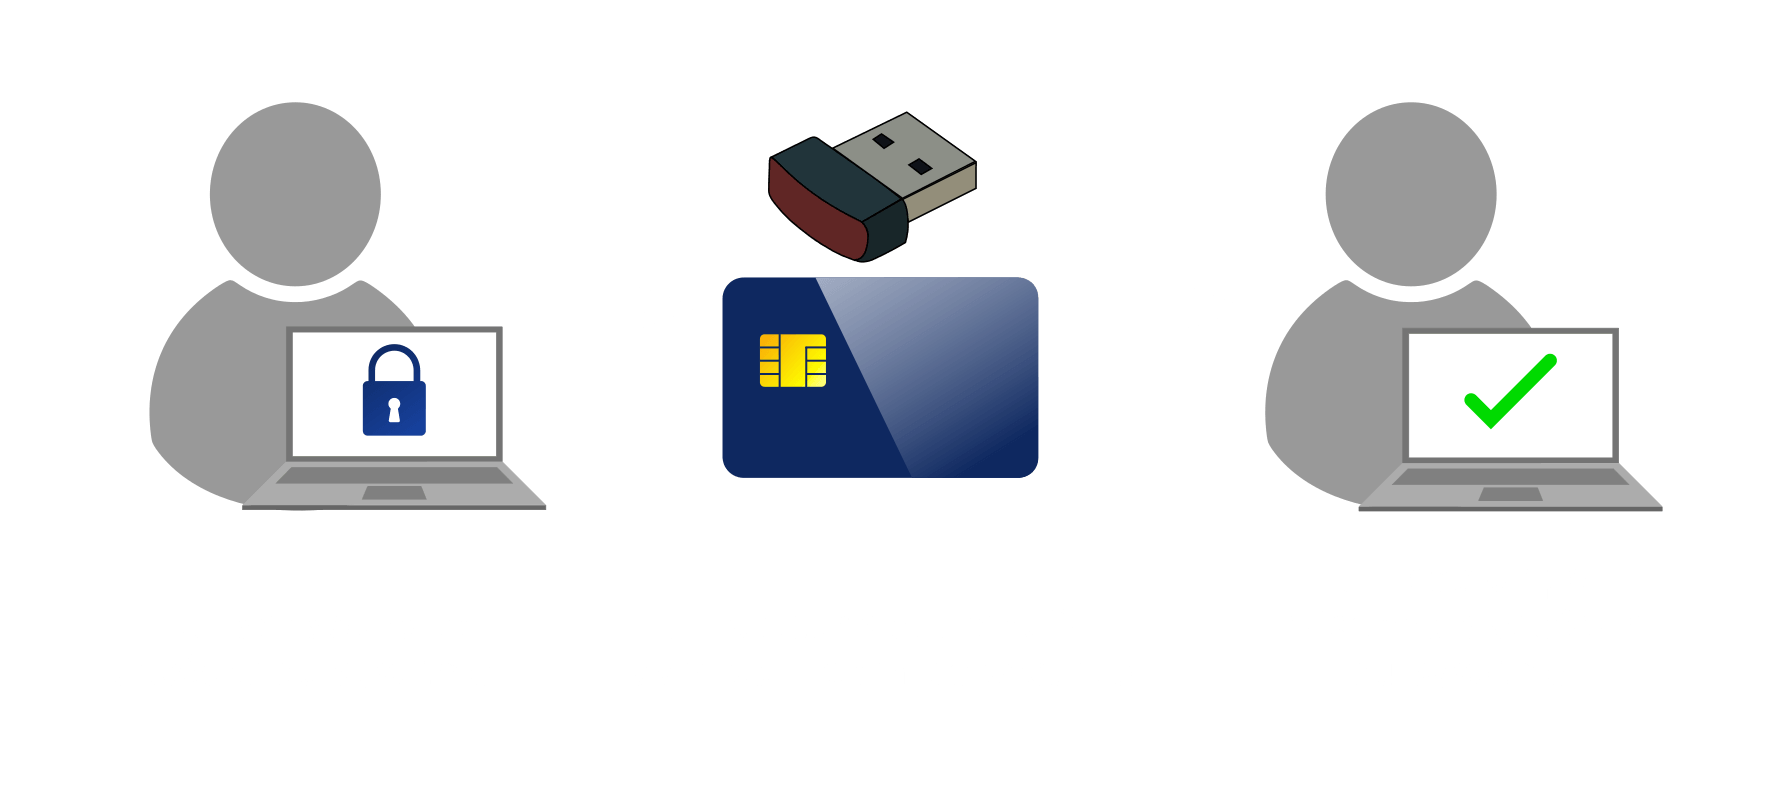 Connexion sécurisée utilisant des certificats numériques avec tokens USB et cartes PKI.